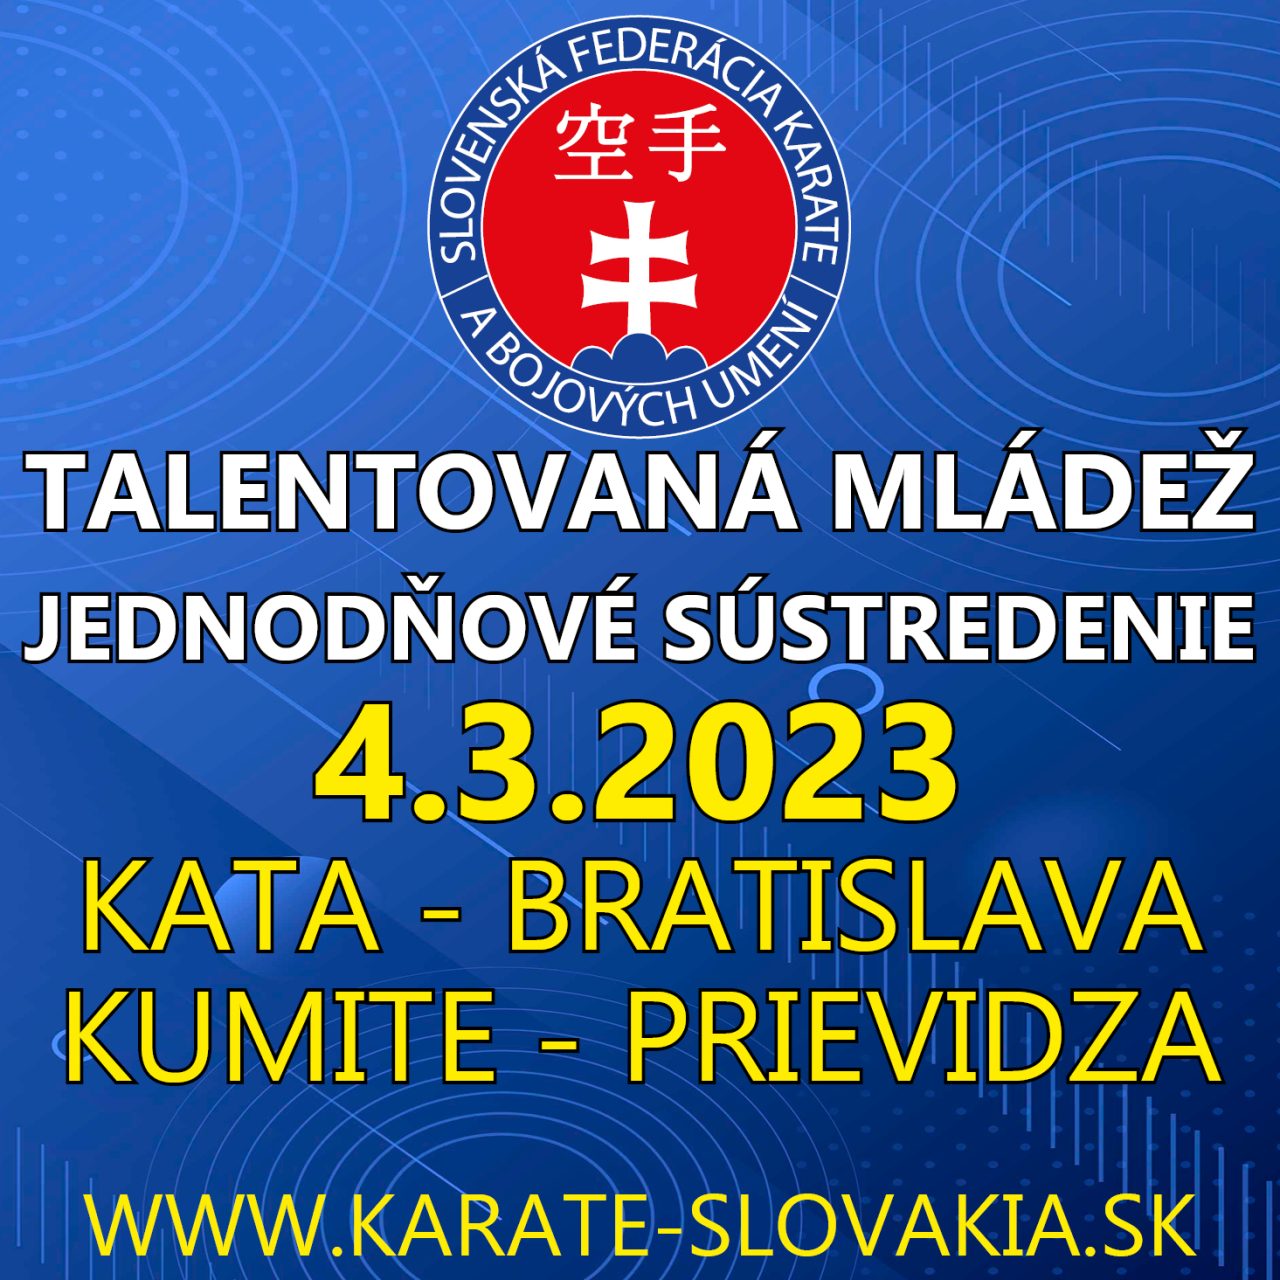 https://karate-slovakia.sk/wp-content/uploads/sustredenie_marec-1280x1280.jpg